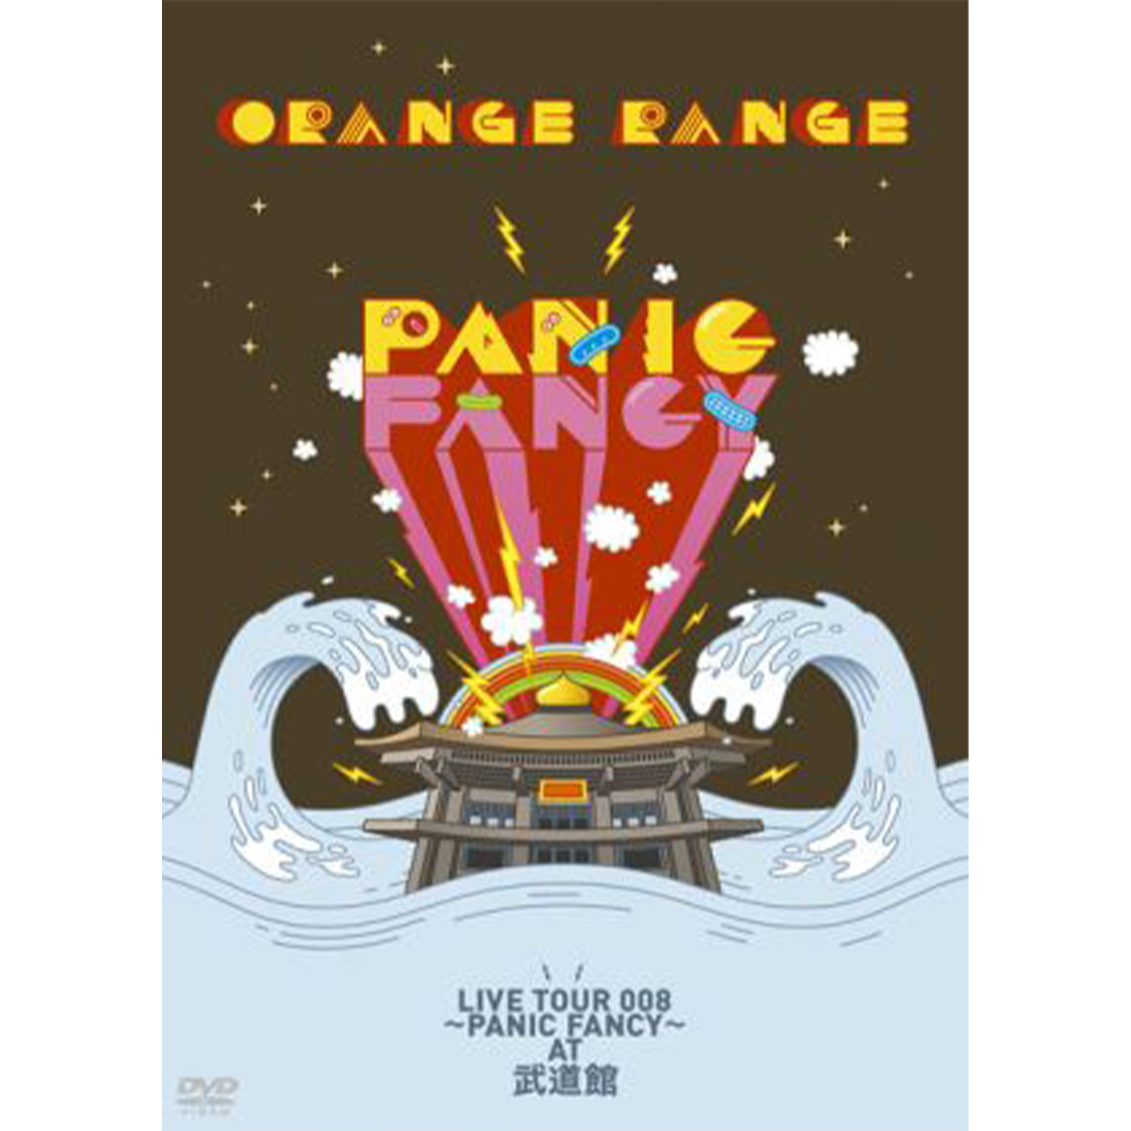 ORANGE RANGE LIVE TOUR 008 〜PANIC FANCY〜 at 武道館